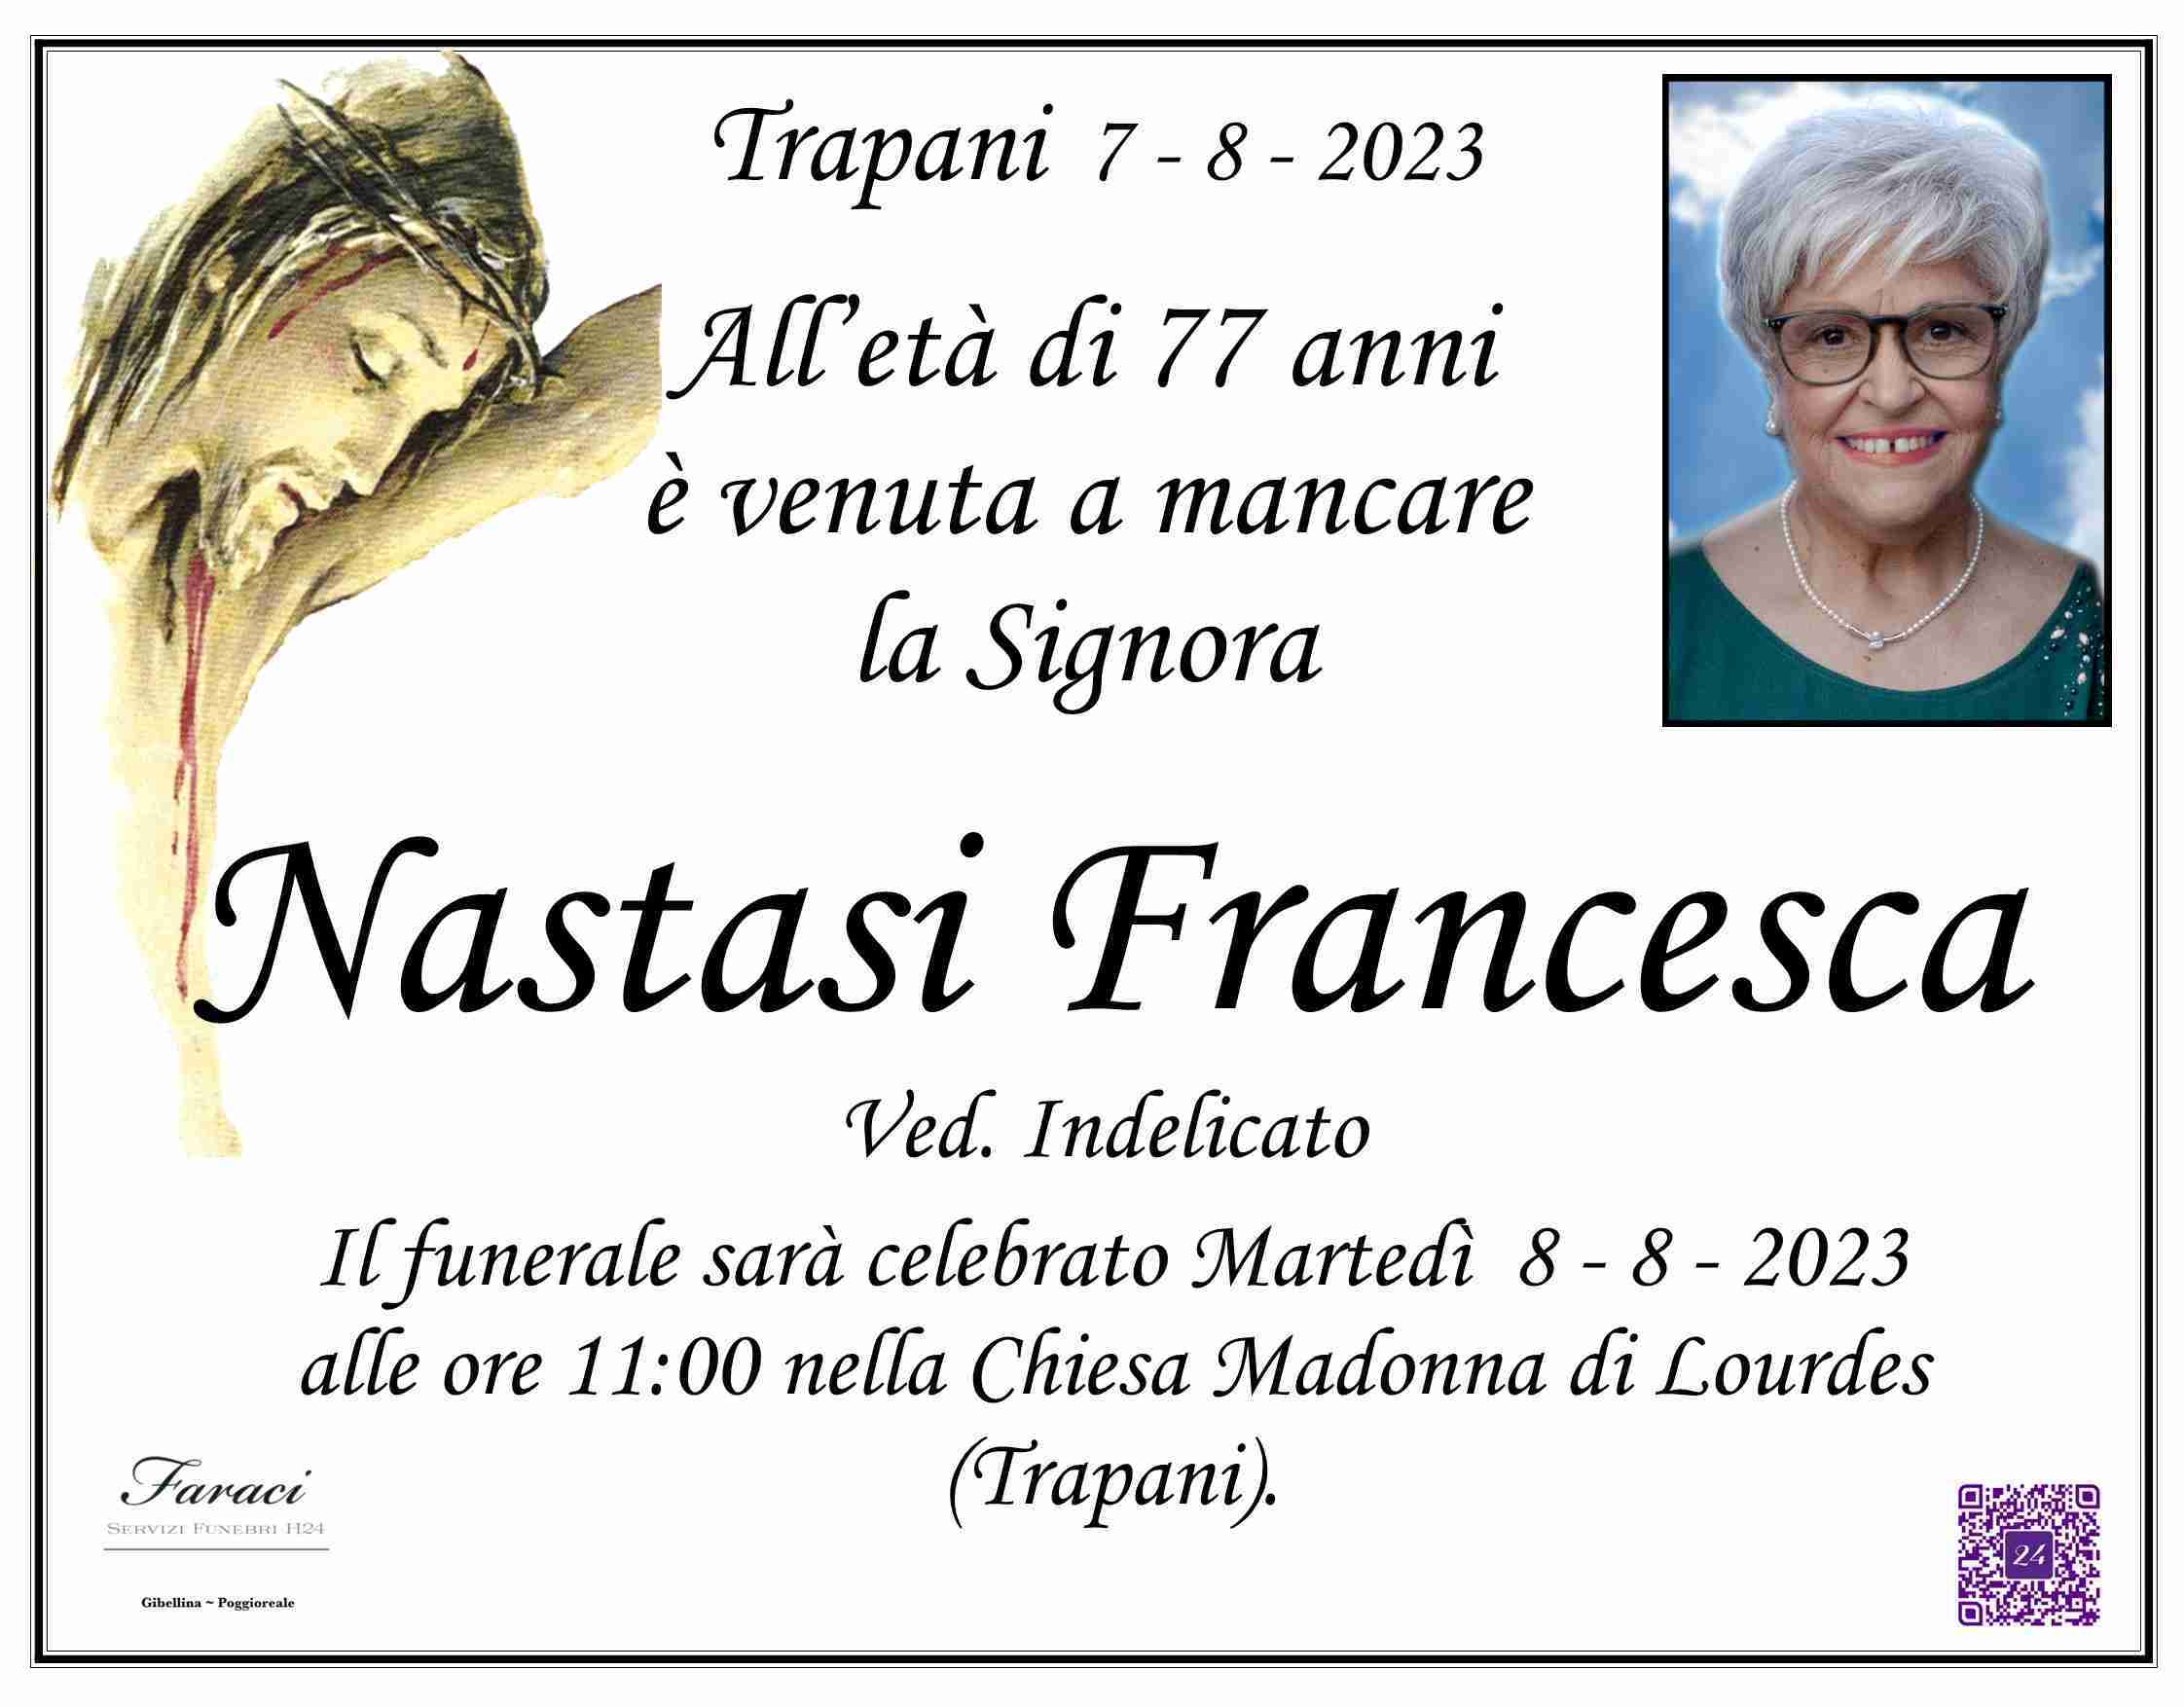 Francesca Nastasi